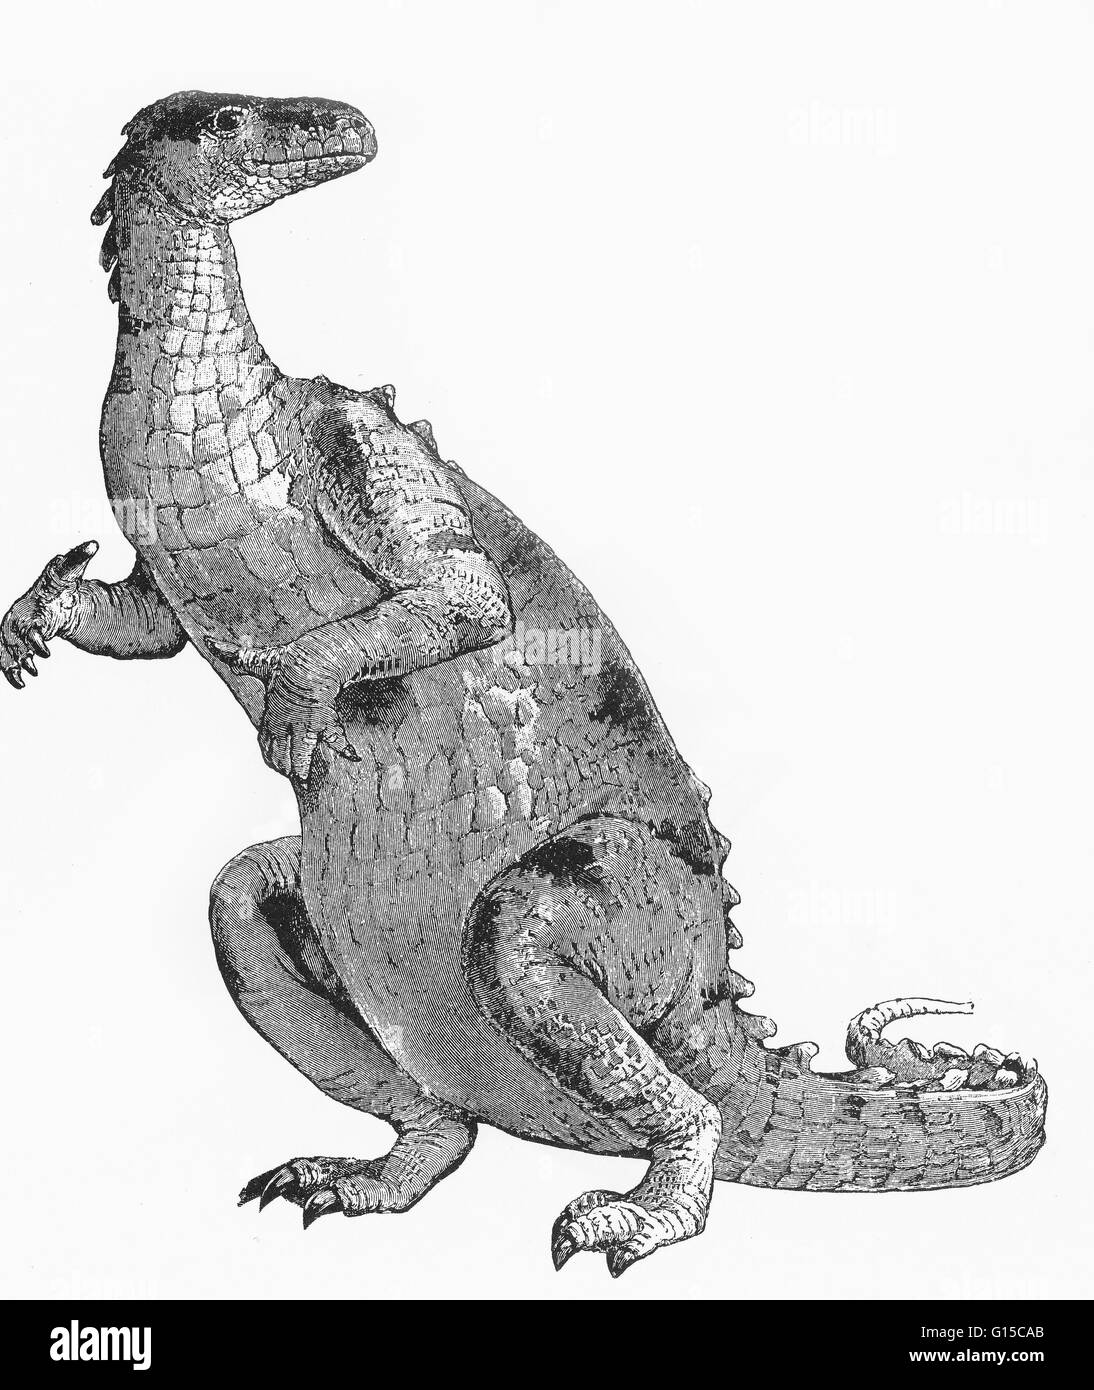 Die Wort Dinosaurier wurde von Richard Owen im Jahr 1841 Deinos (schrecklich) + Sauros (Eidechse), die beschreiben verschiedene ausgestorbene Reptilien der Ordnungen Saurischia und Ornithischia, die während der mesozoischen Ära blühte geprägt. Dinosaurier waren fleischfressende oder Pflanzenfresser, Stockfoto